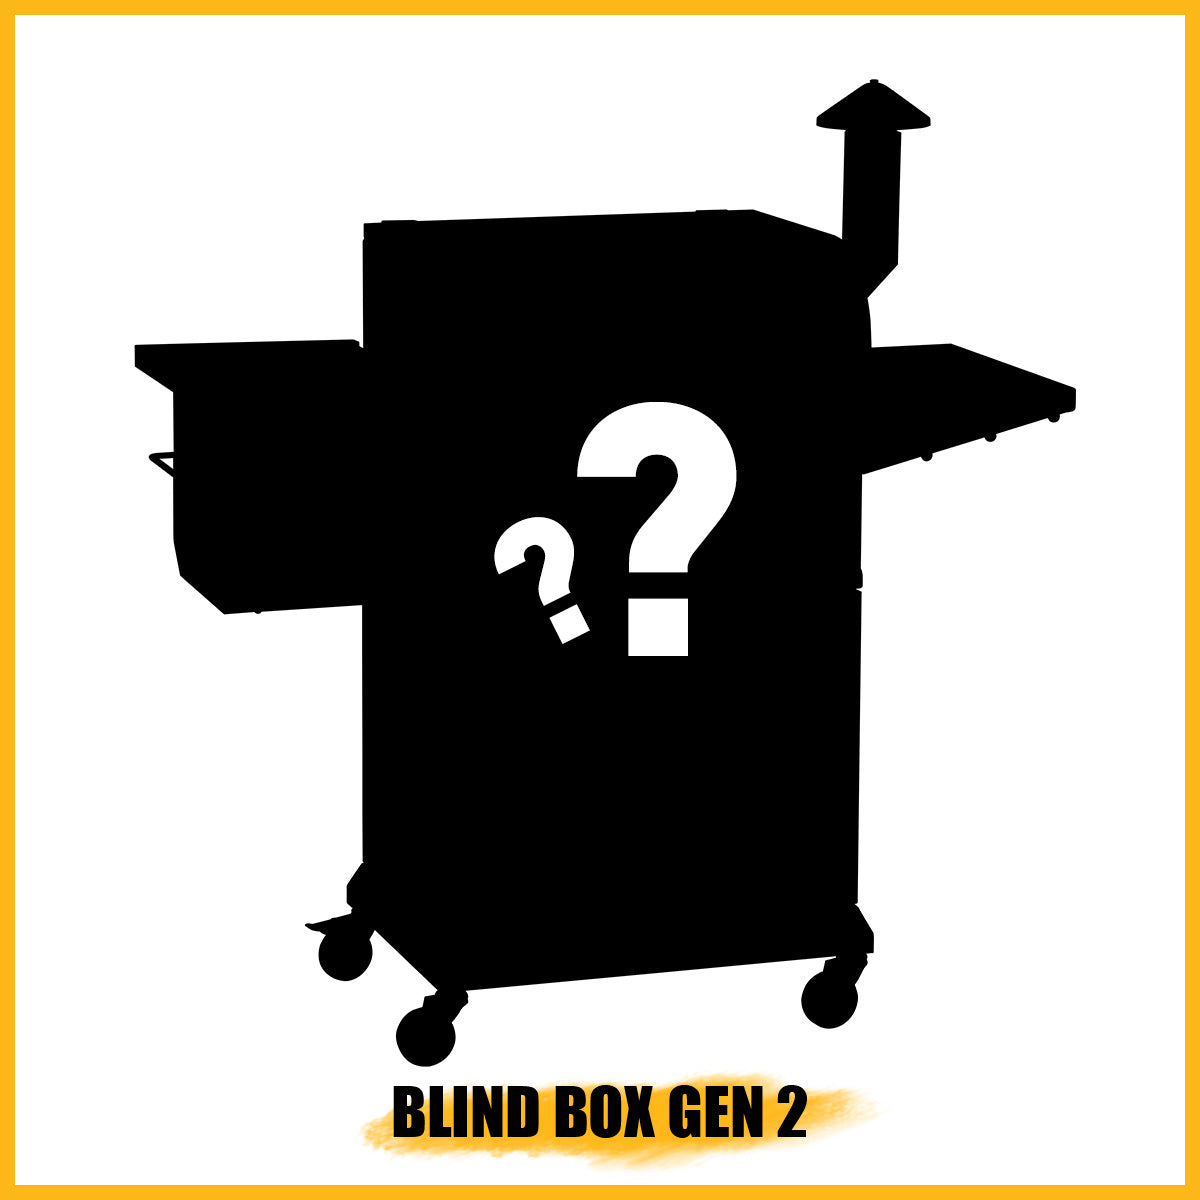 BLIND BOX GEN 2